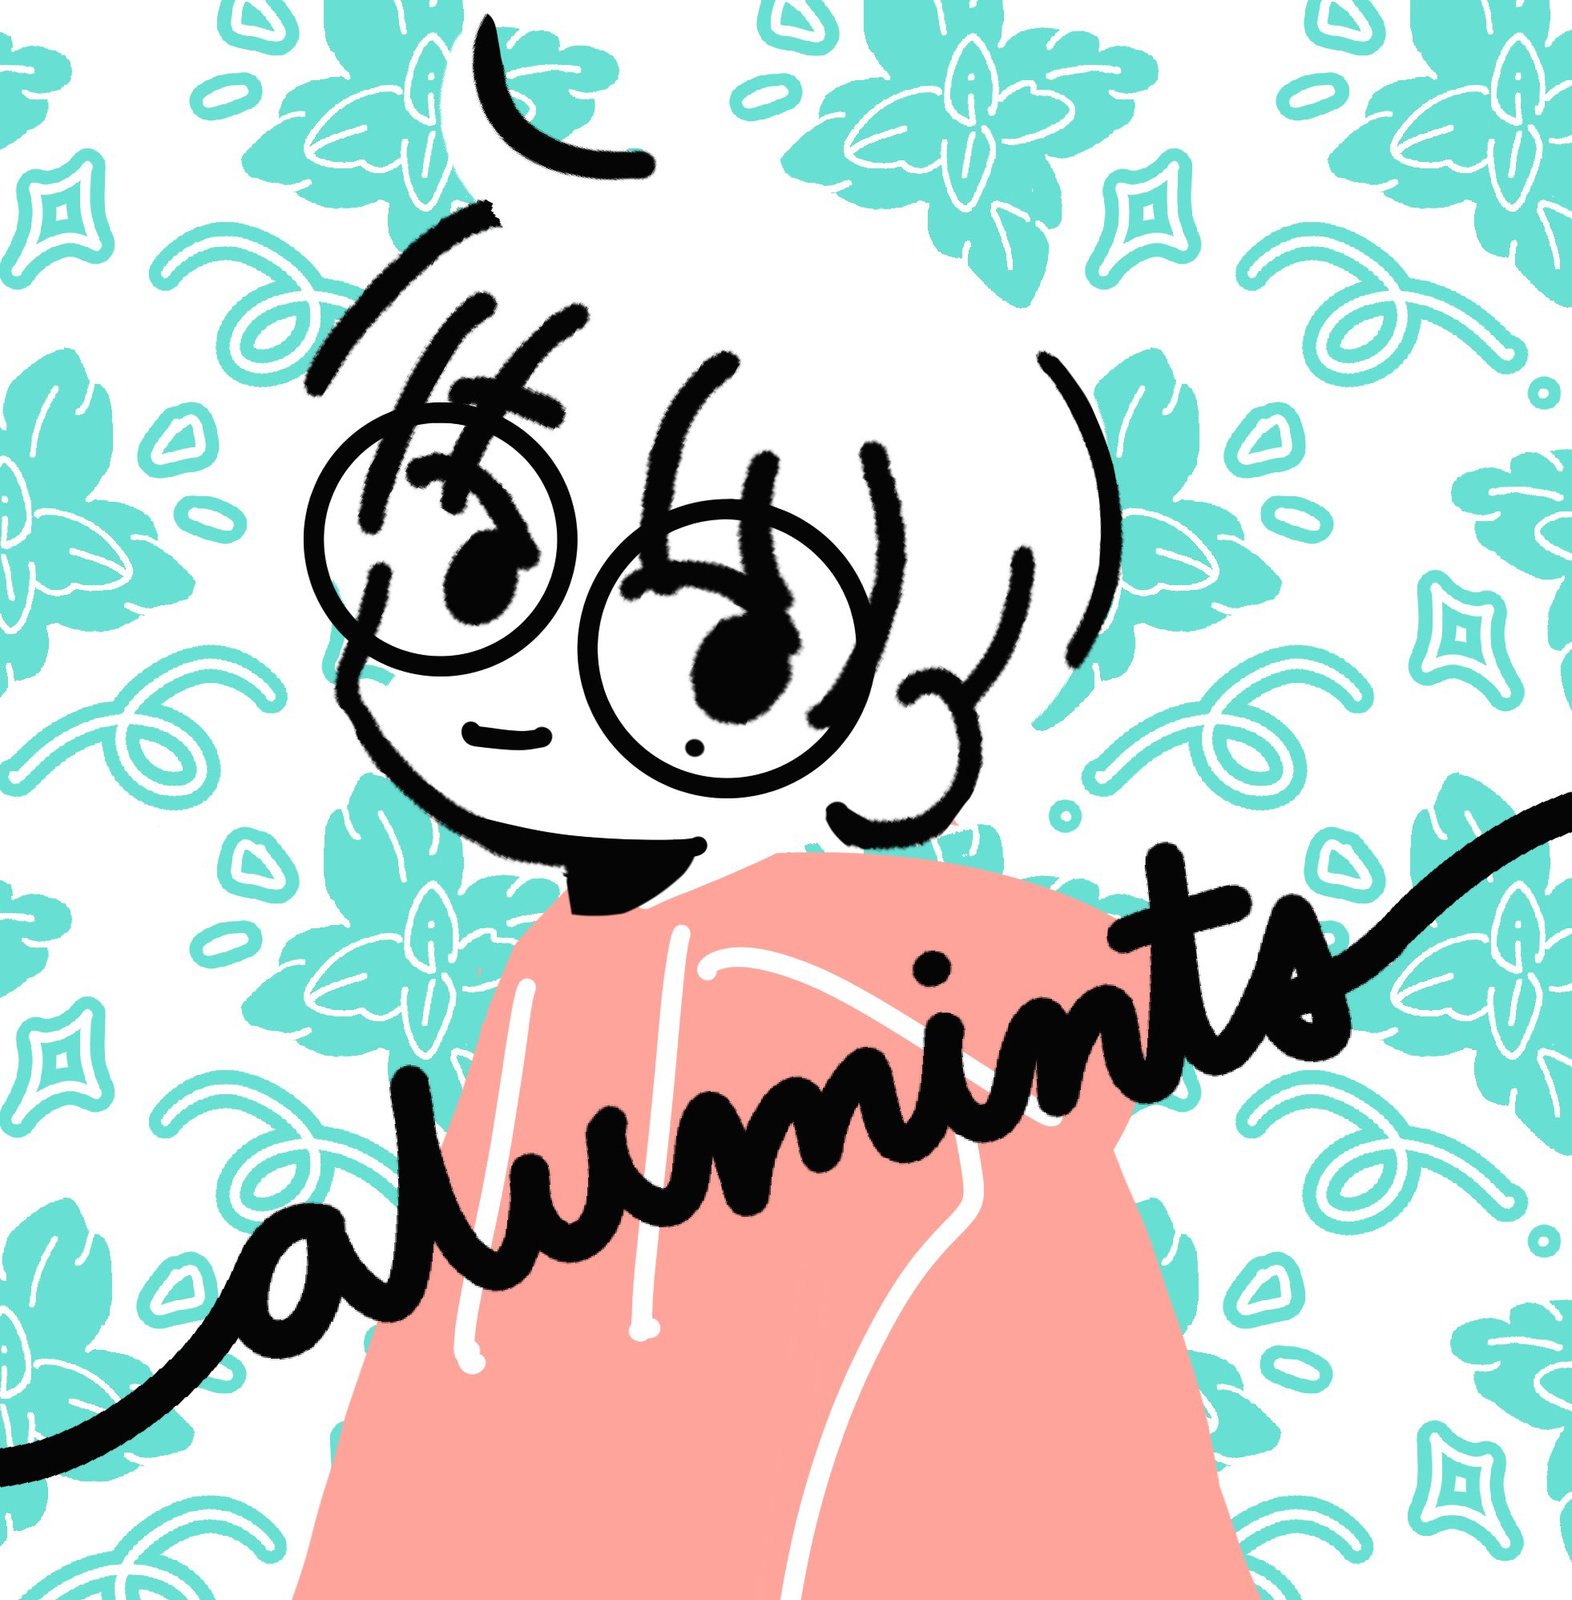 Alumints